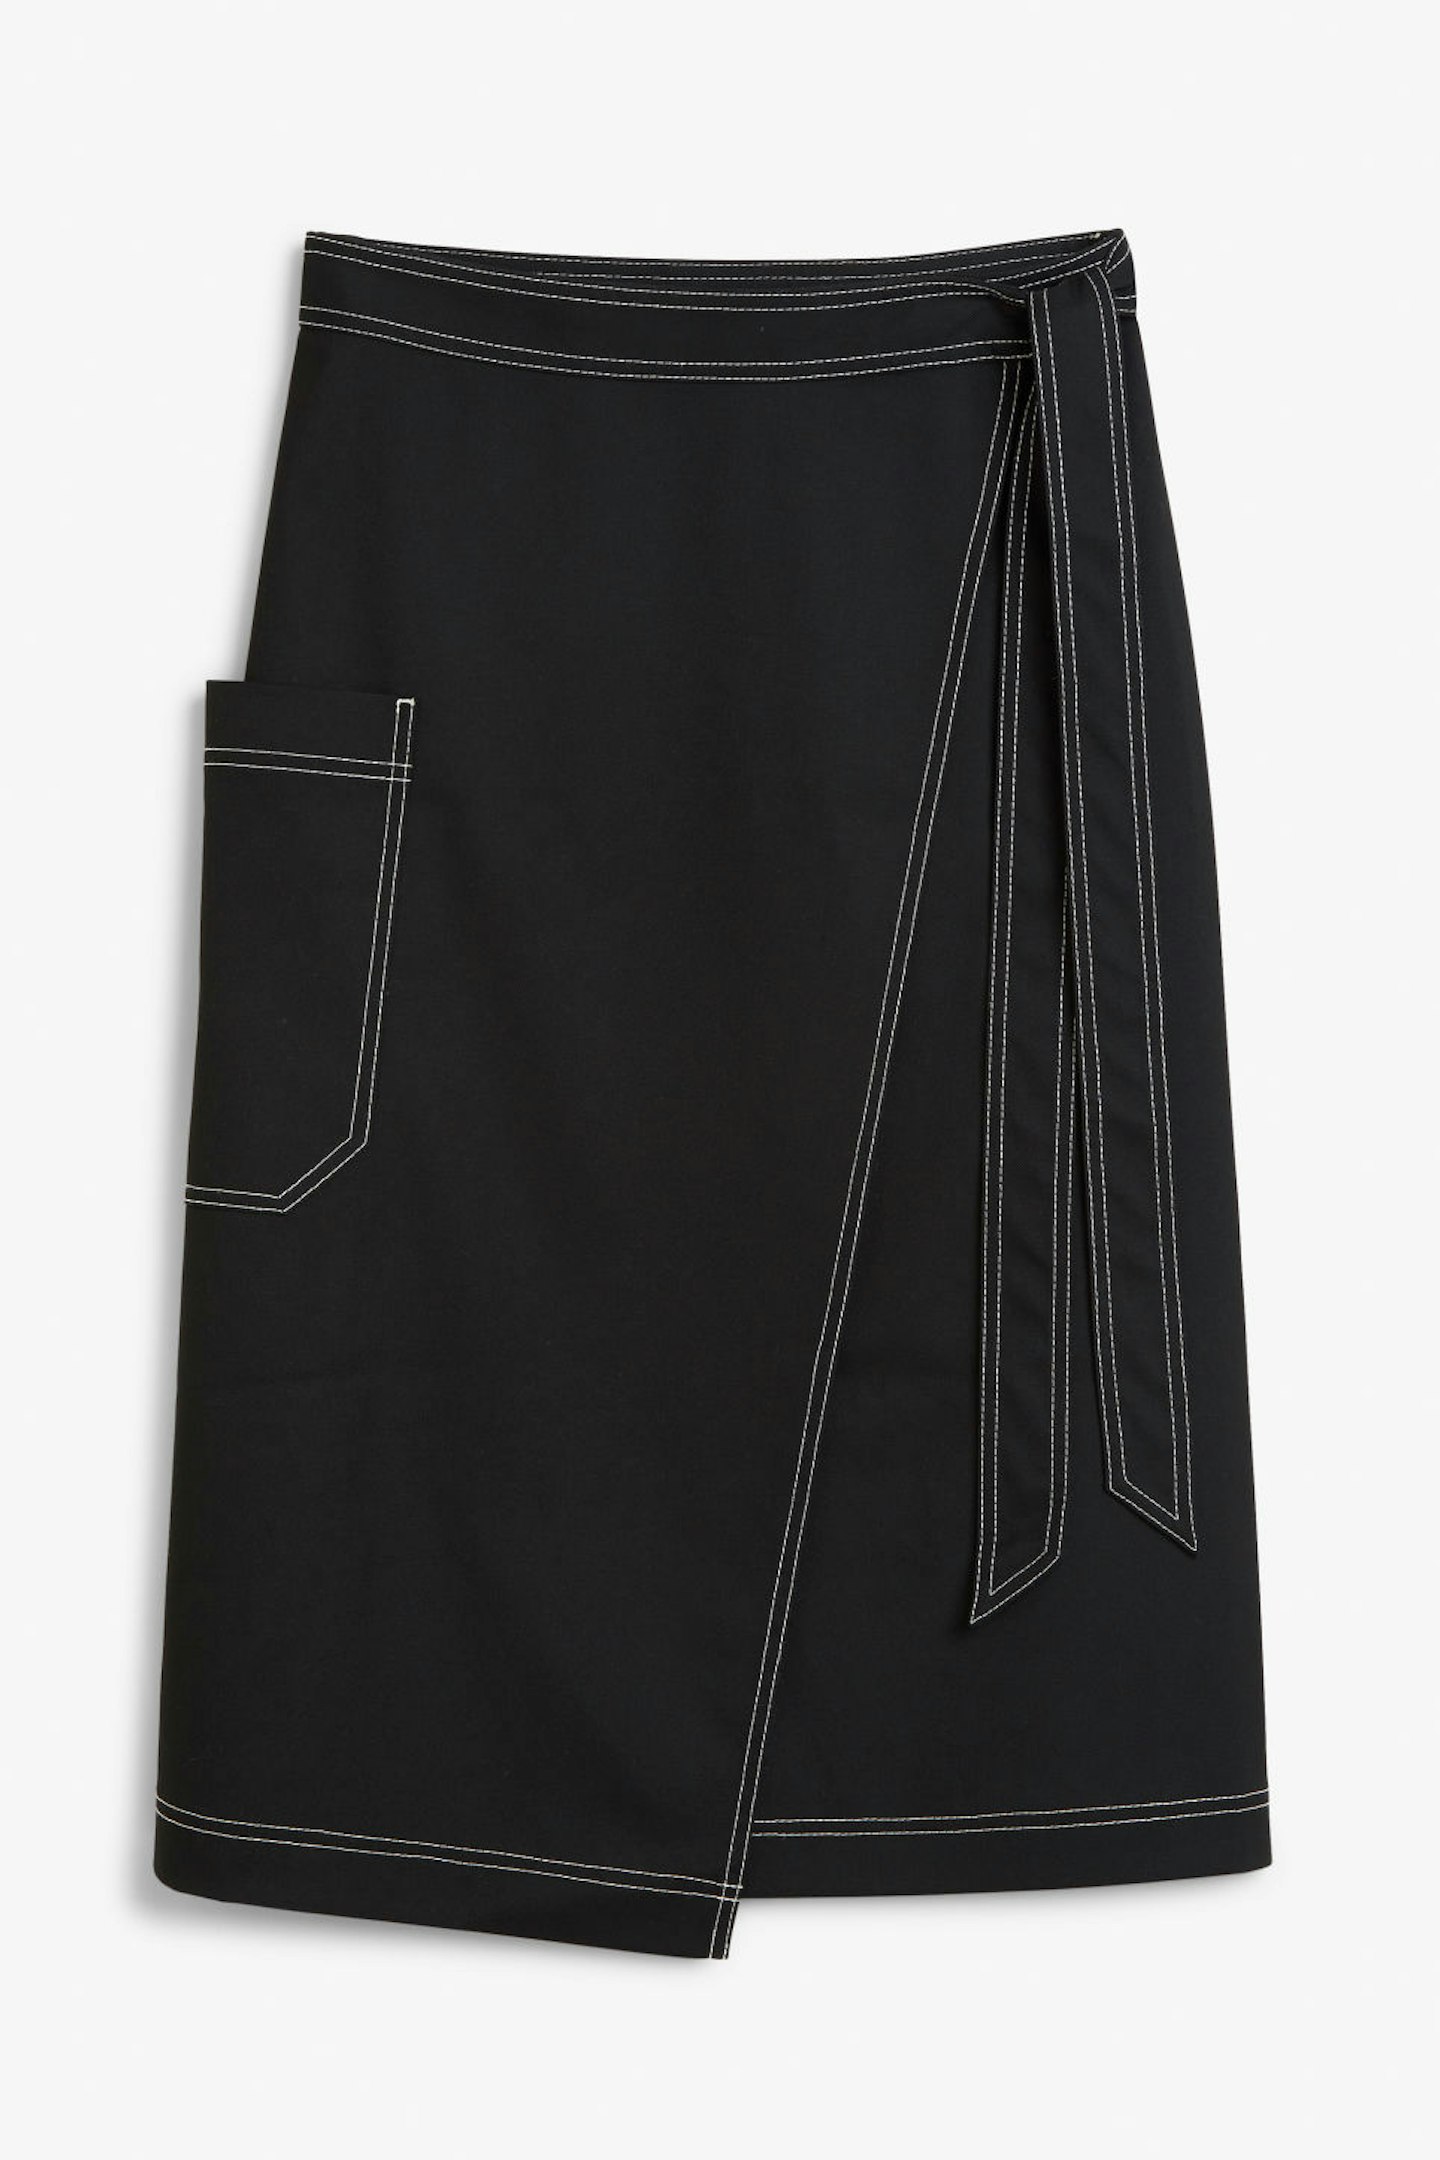 Monki, Utility Midi Skirt, £30